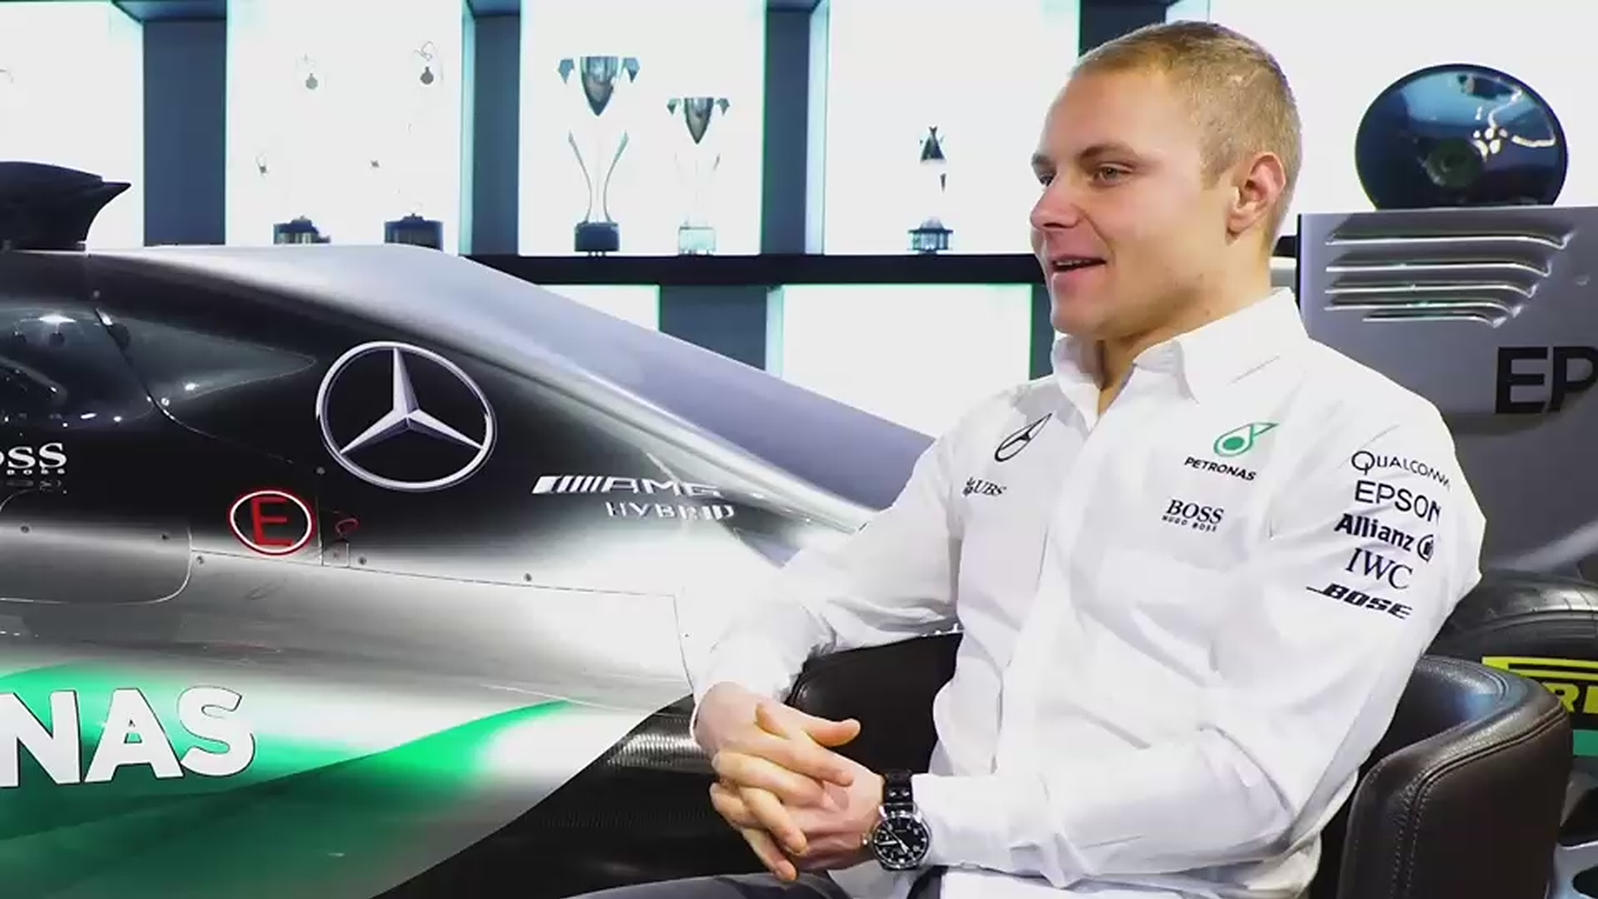 Formel 1: Valtteri Bottas fährt für Mercedes - Felipe Massa verschiebt ... - RTL Online